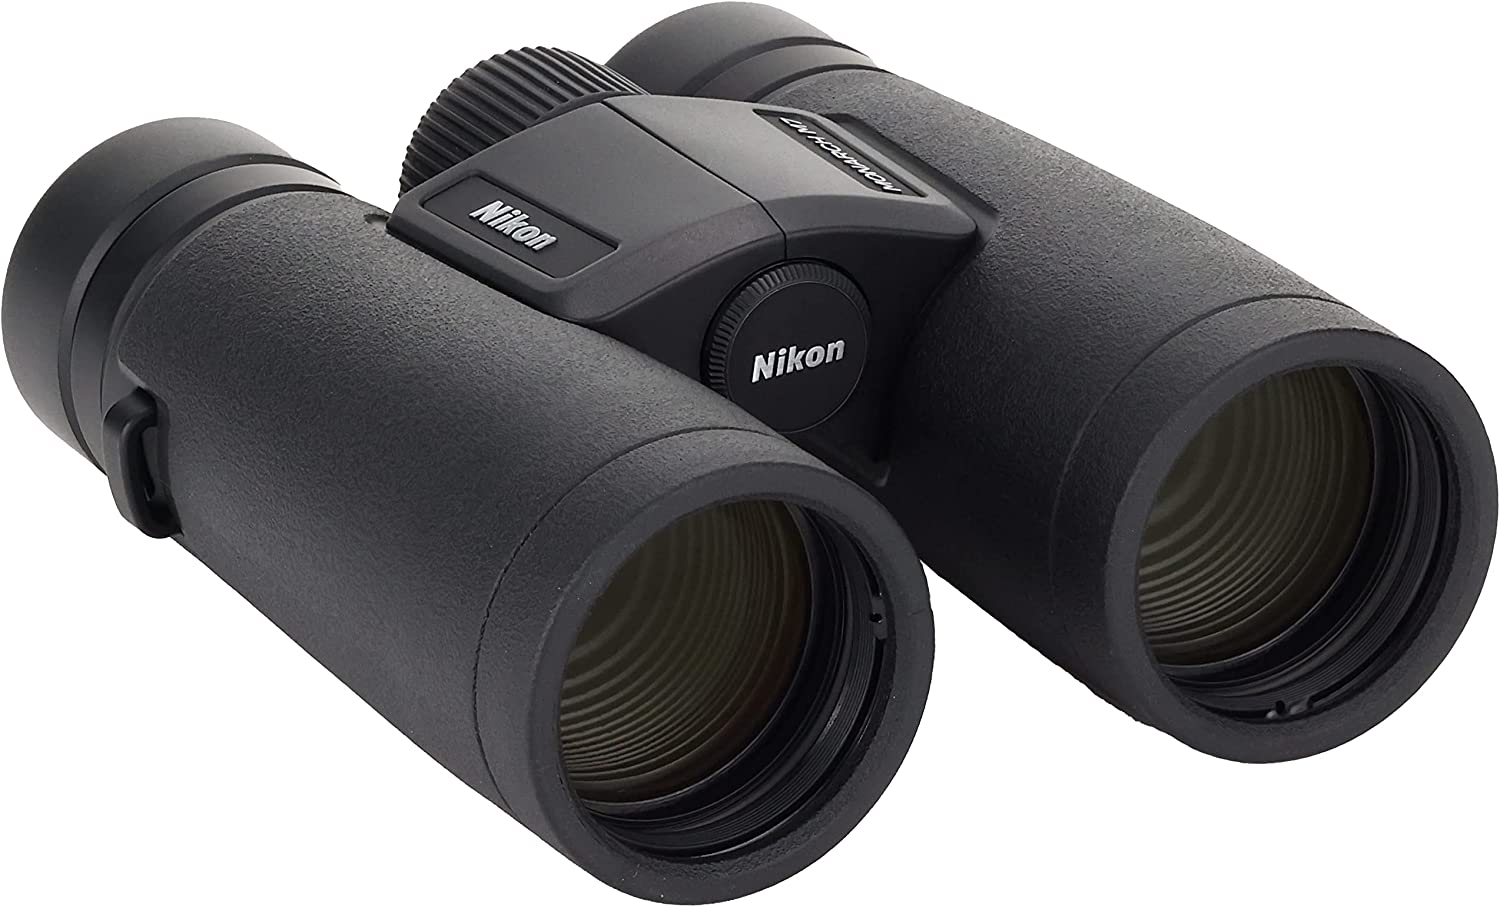 免運 日本公司貨 Nikon MONARCH M7 10x42 雙筒 望遠鏡 10倍 42mm 防水防霧 觀賽 賞鳥 旅行 禮物 日本必買代購